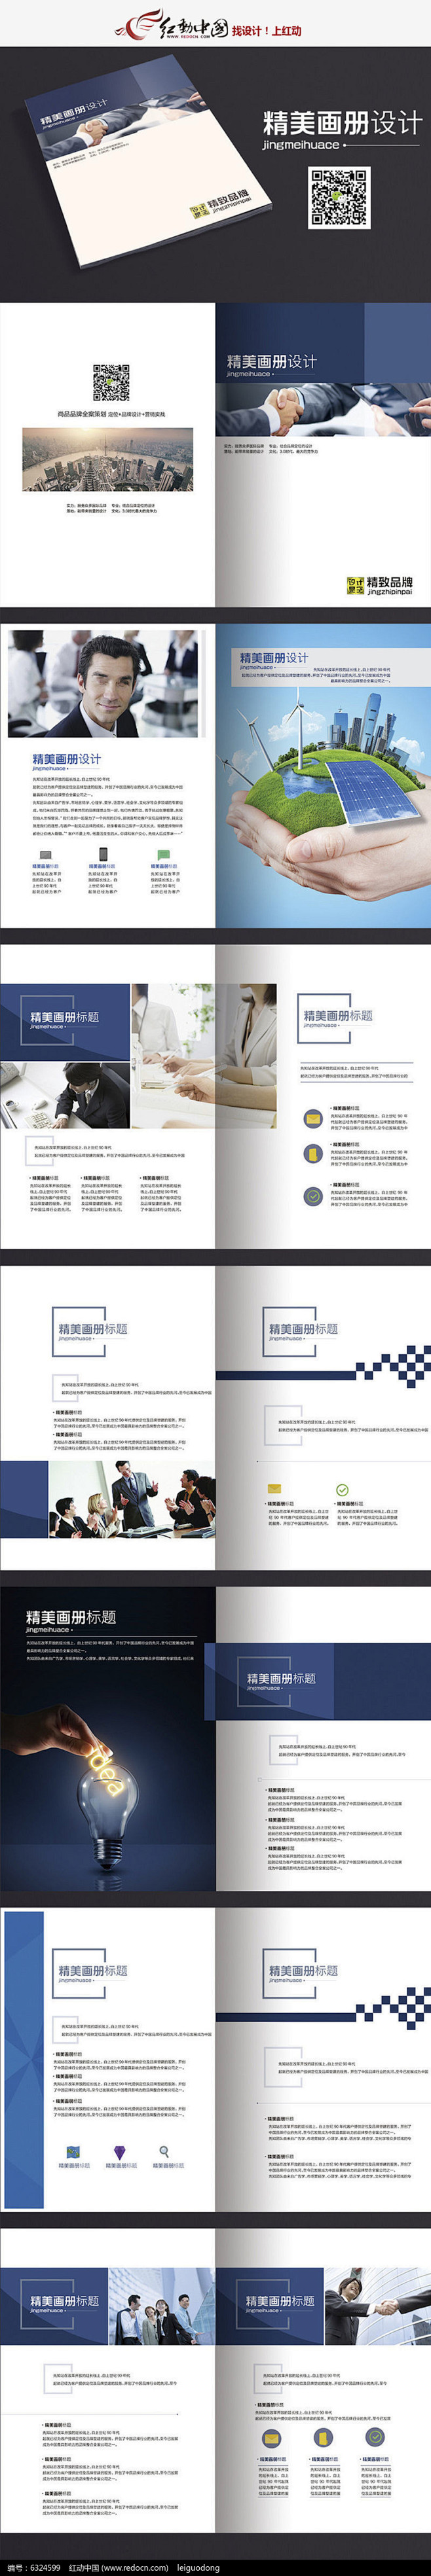 高档能源公司画册设计模版PSD素材下载_...